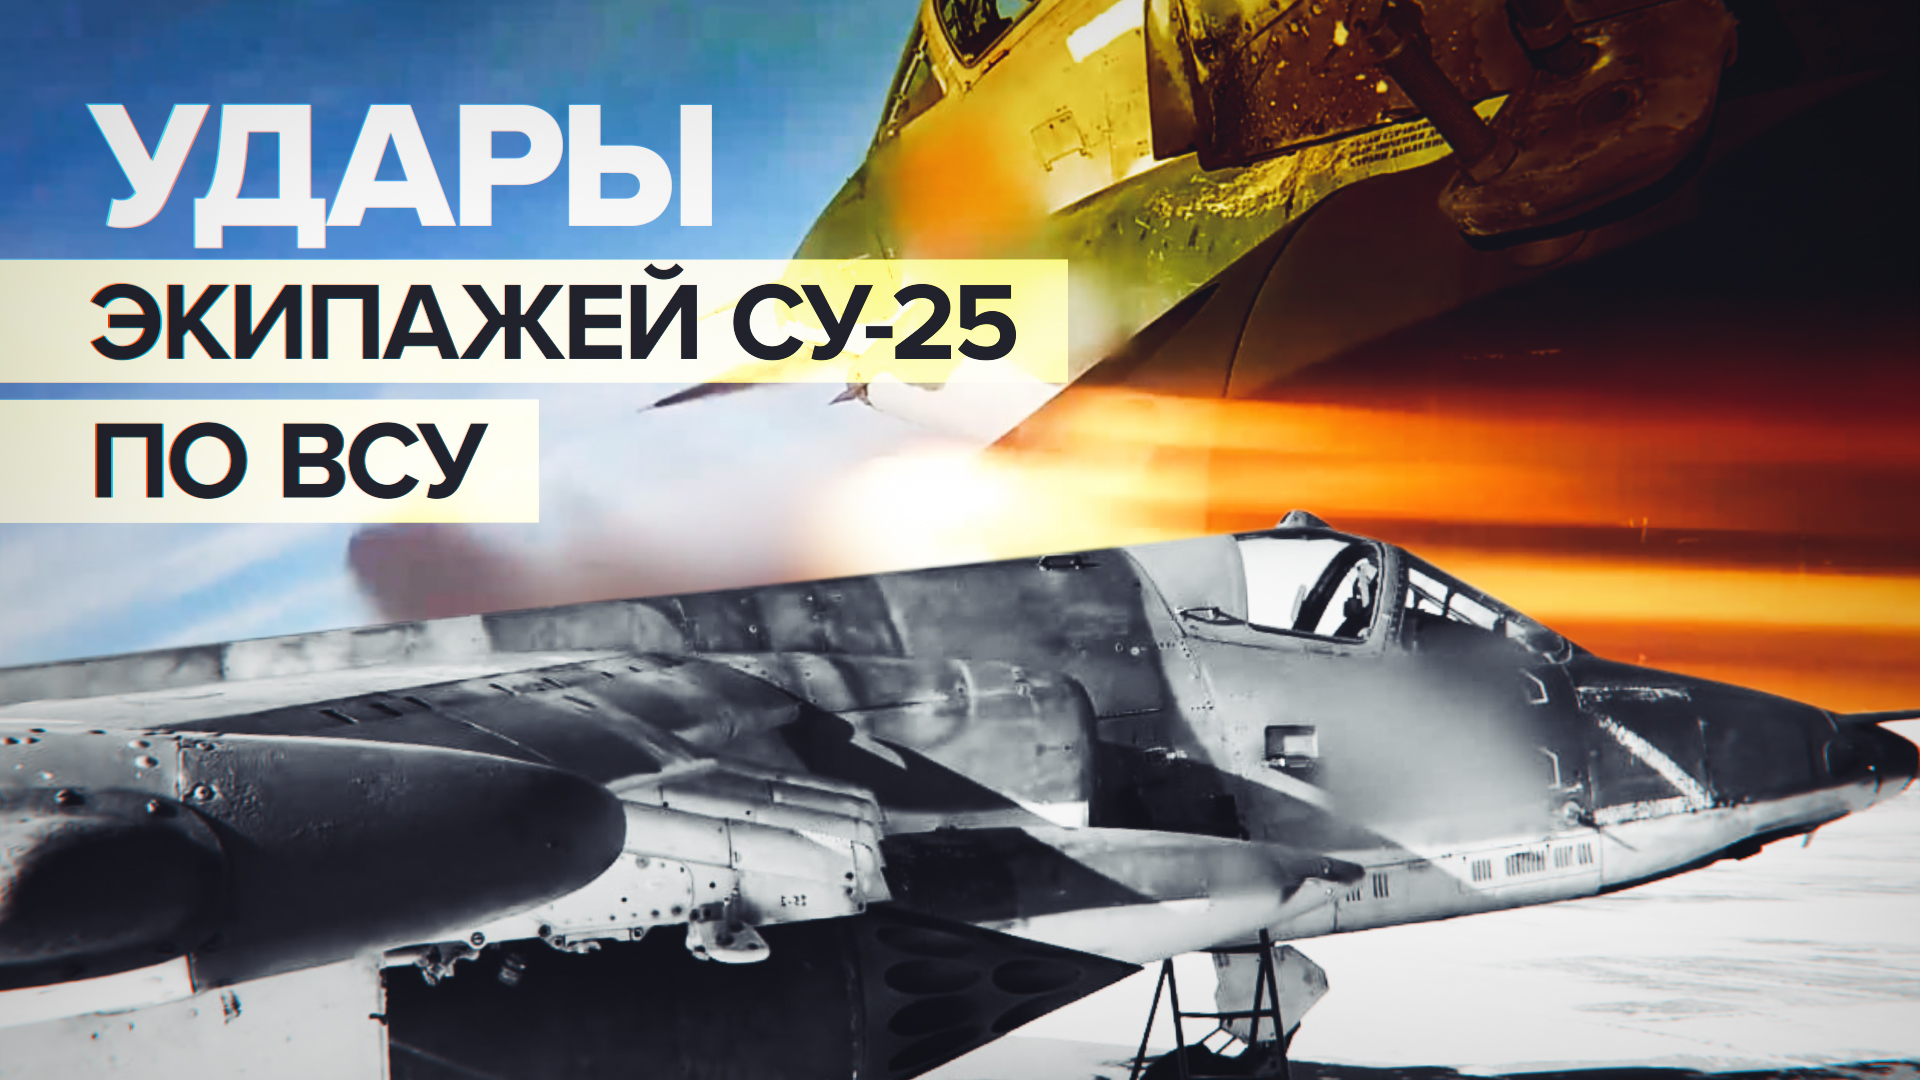 Точно в цель: российские штурмовики Су-25 нанесли удары по объектам ВСУ на Донецком направлении